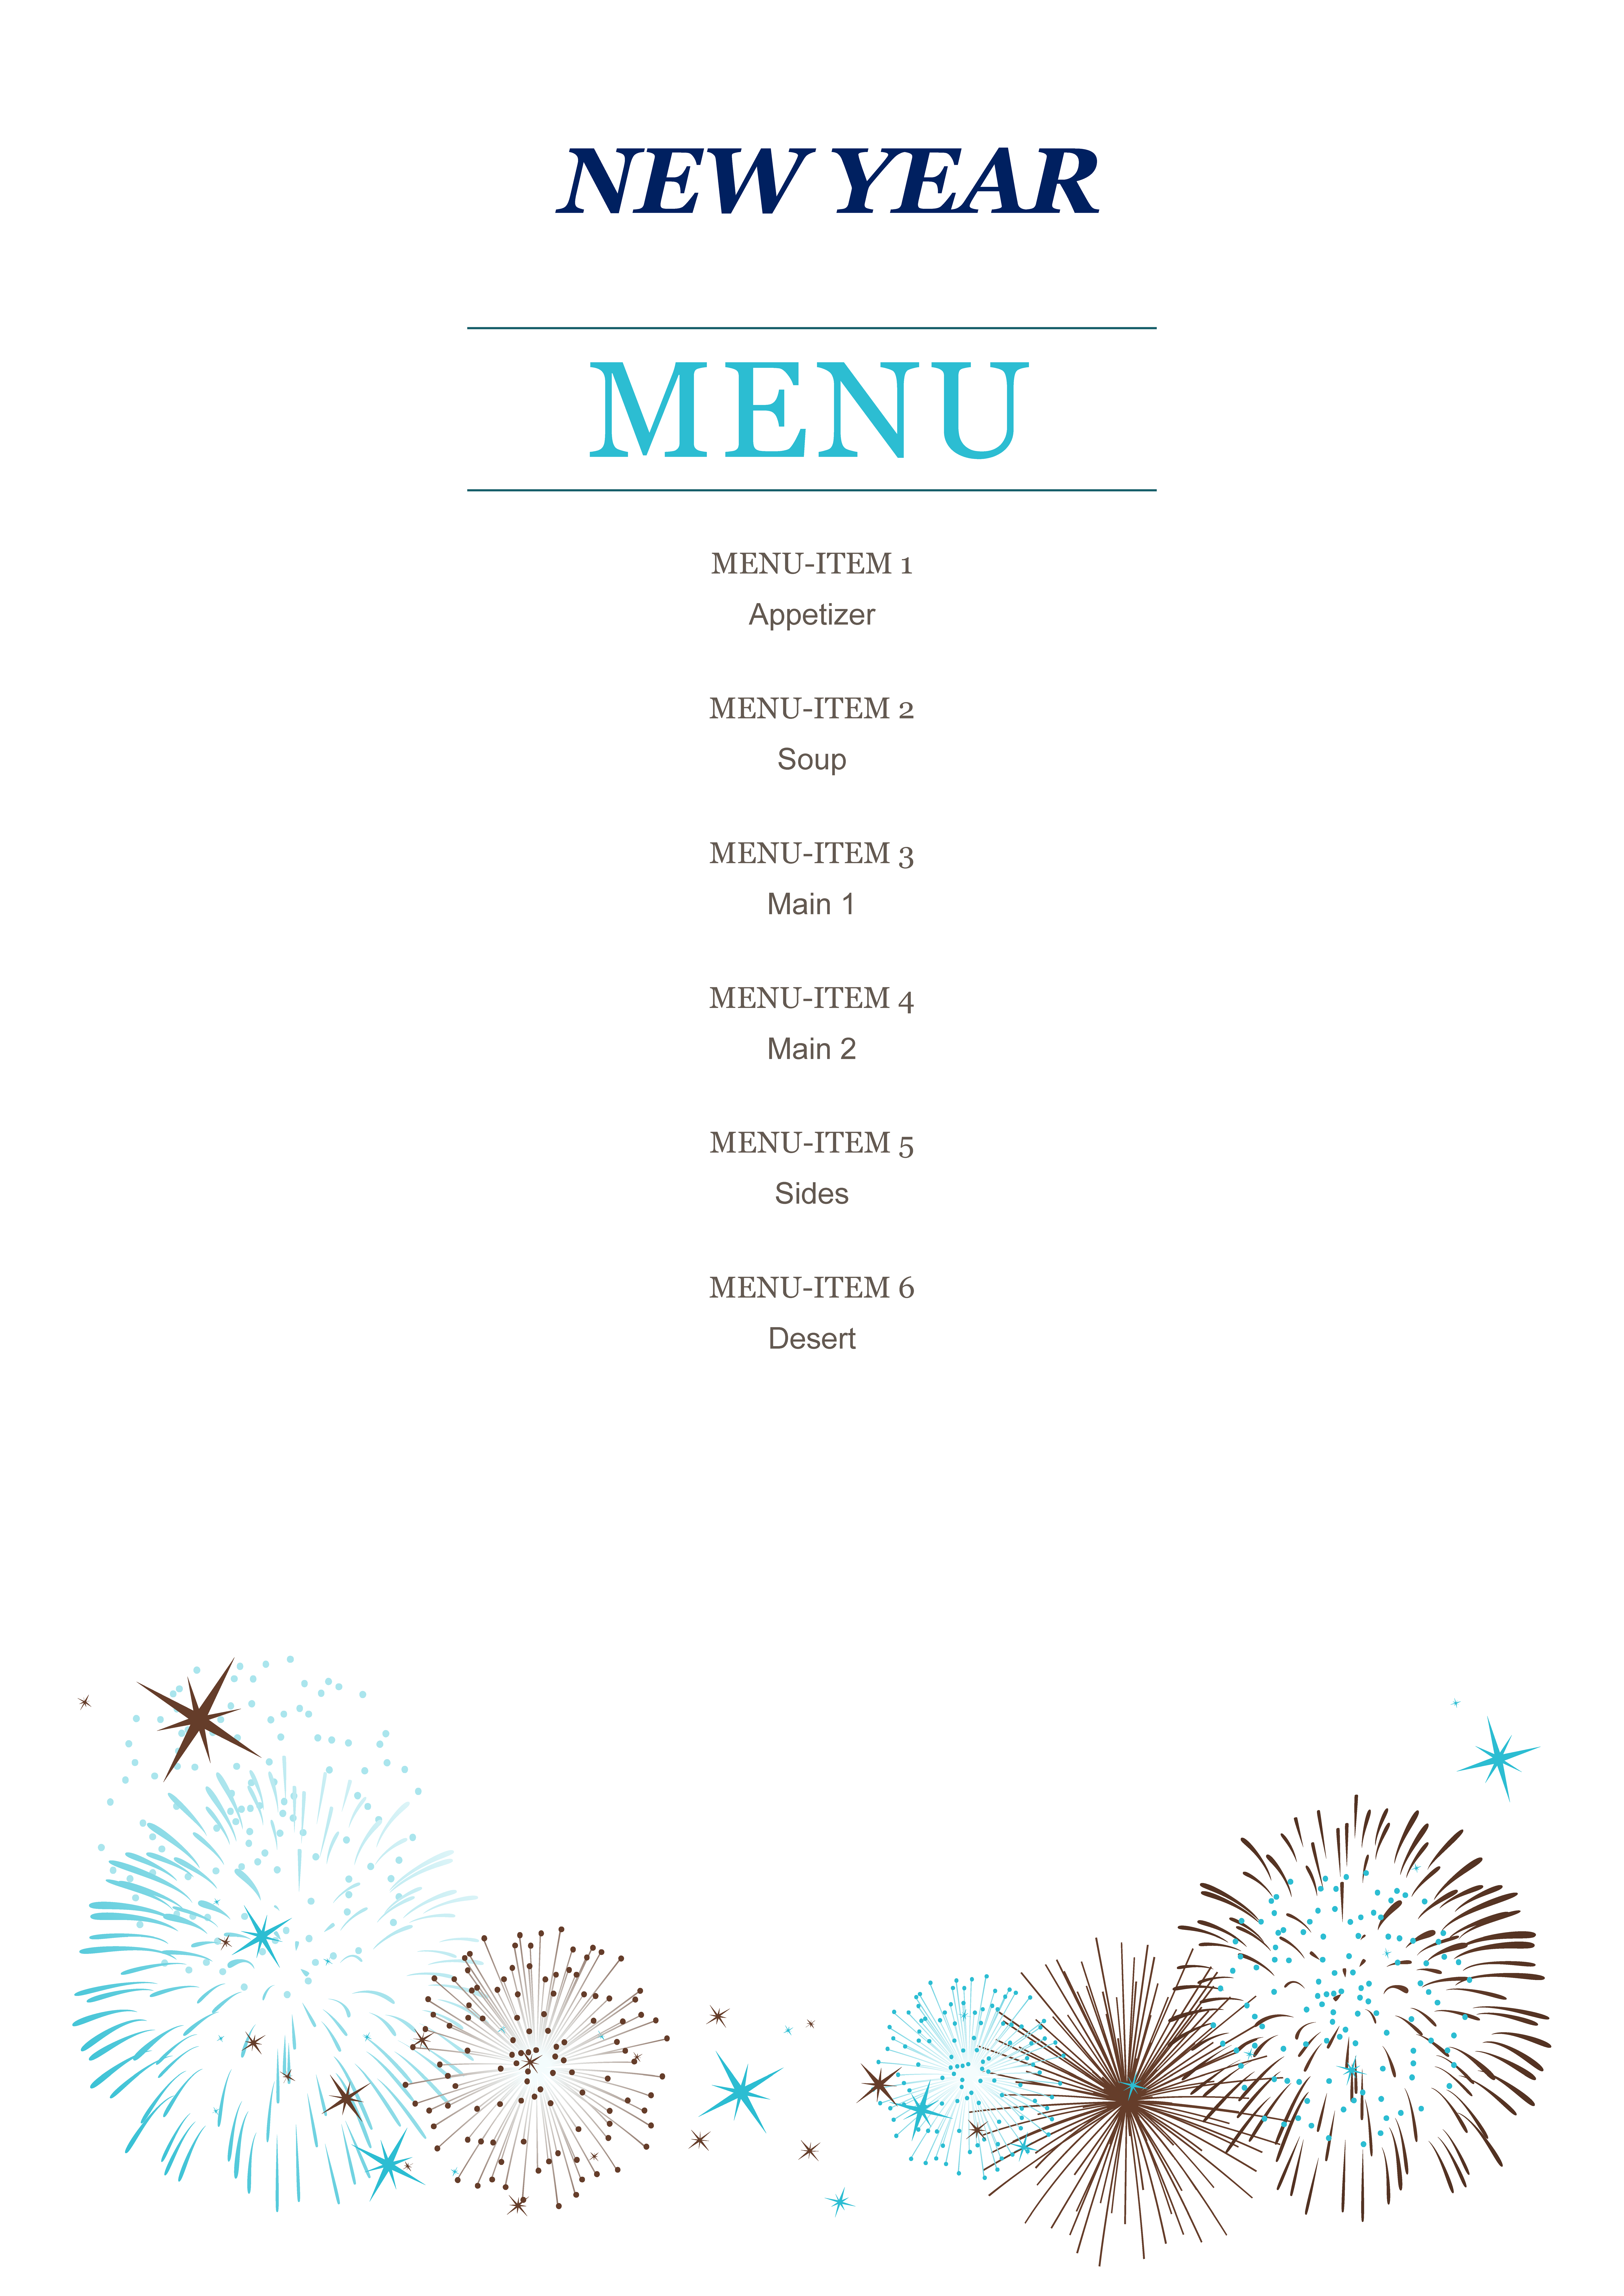 newyear party menu plantilla imagen principal